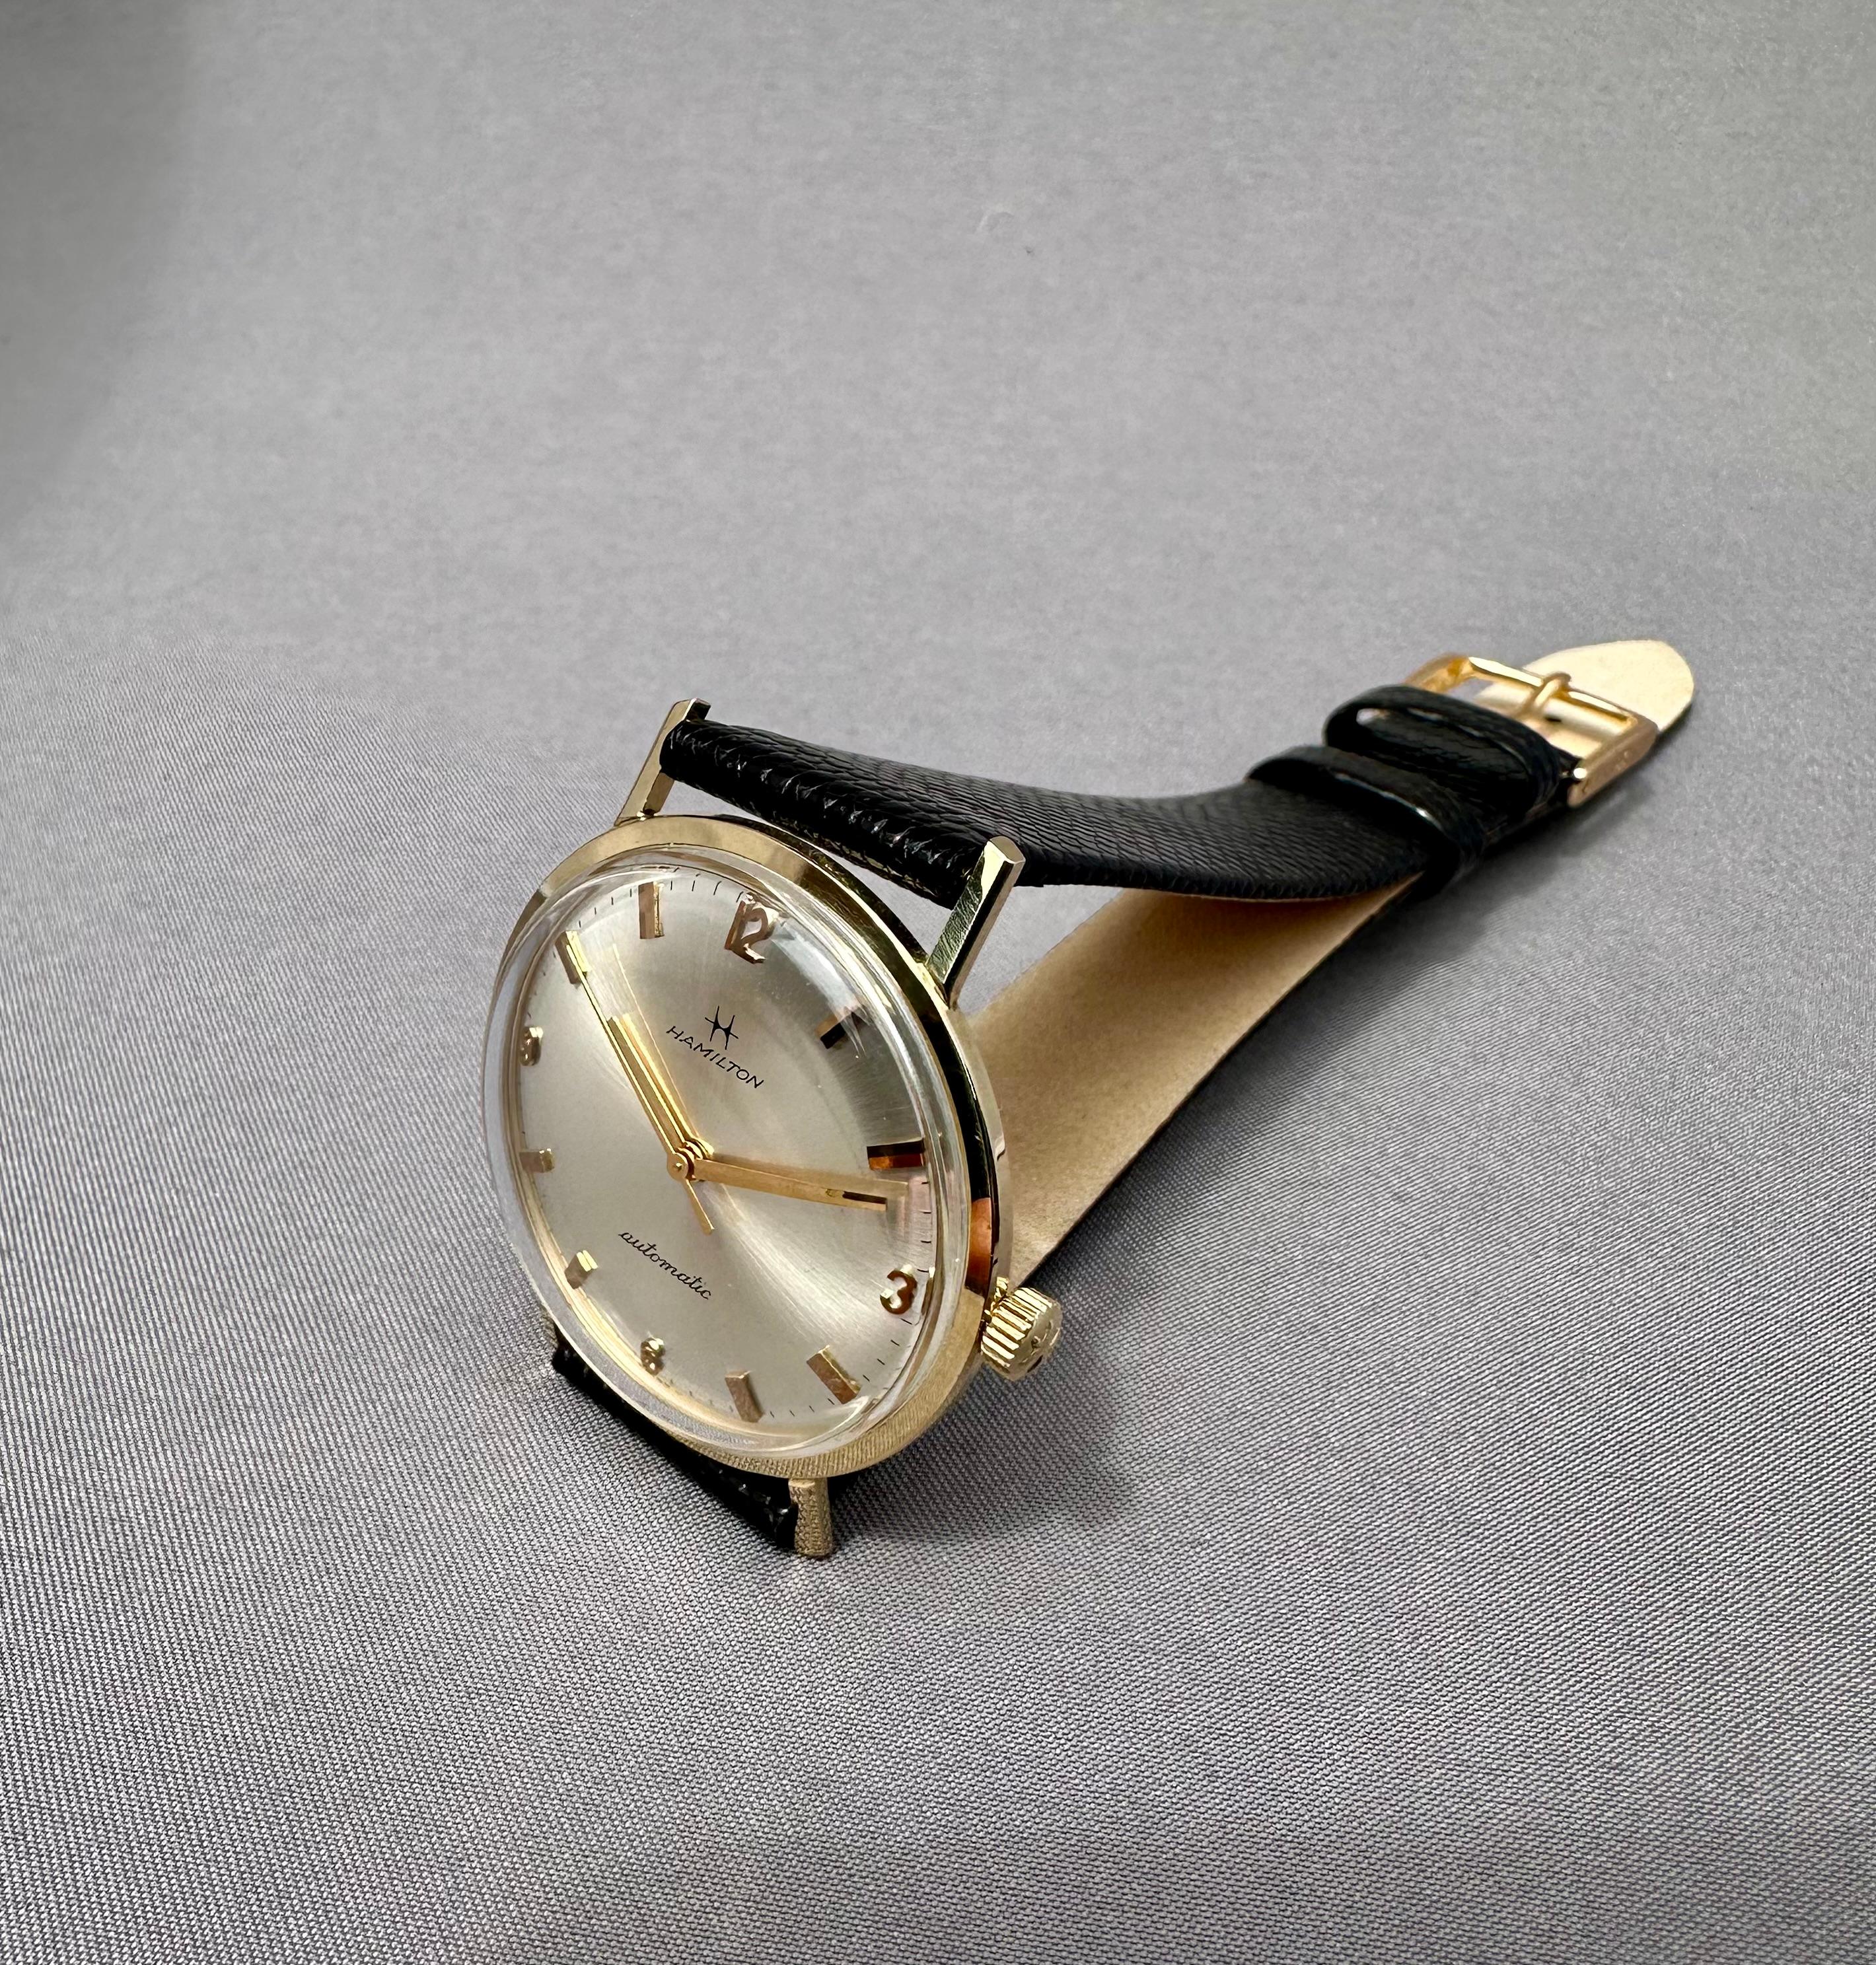 Vintage Hamilton Silber Zifferblatt 14k Solid Gold Automatik-Uhr - 1970er Jahre

Beschreibung / Zustand: Alle Uhren wurden professionell überprüft und gewartet, bevor sie zum Verkauf angeboten wurden. 

Hersteller: Hamilton

Modell: Hamilton